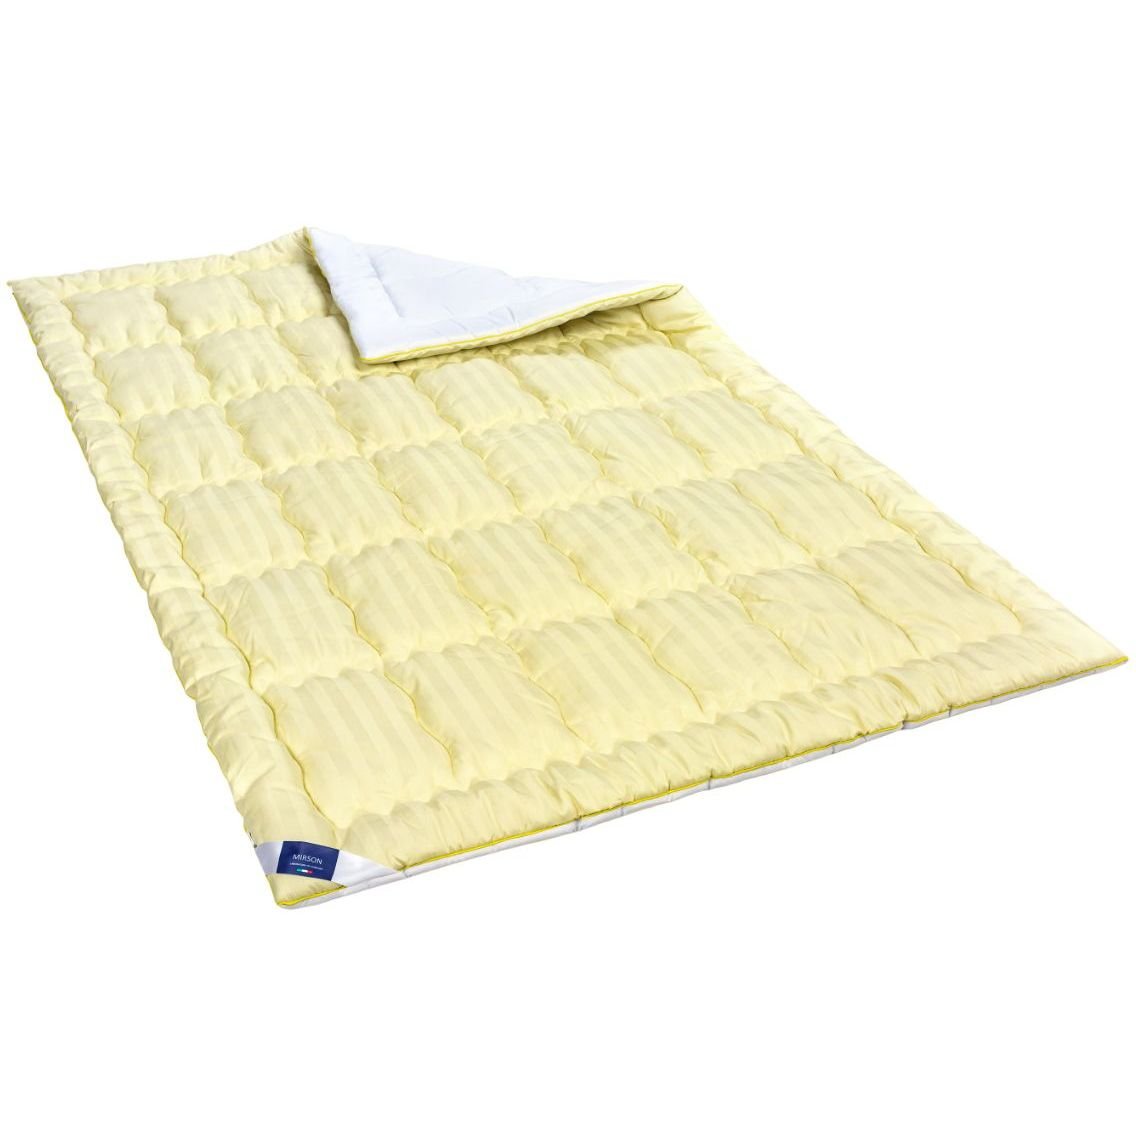 Одеяло антиаллергенное MirSon Carmela Hand Made EcoSilk №0555, зимнее, 140x205 см, желто-белое - фото 1